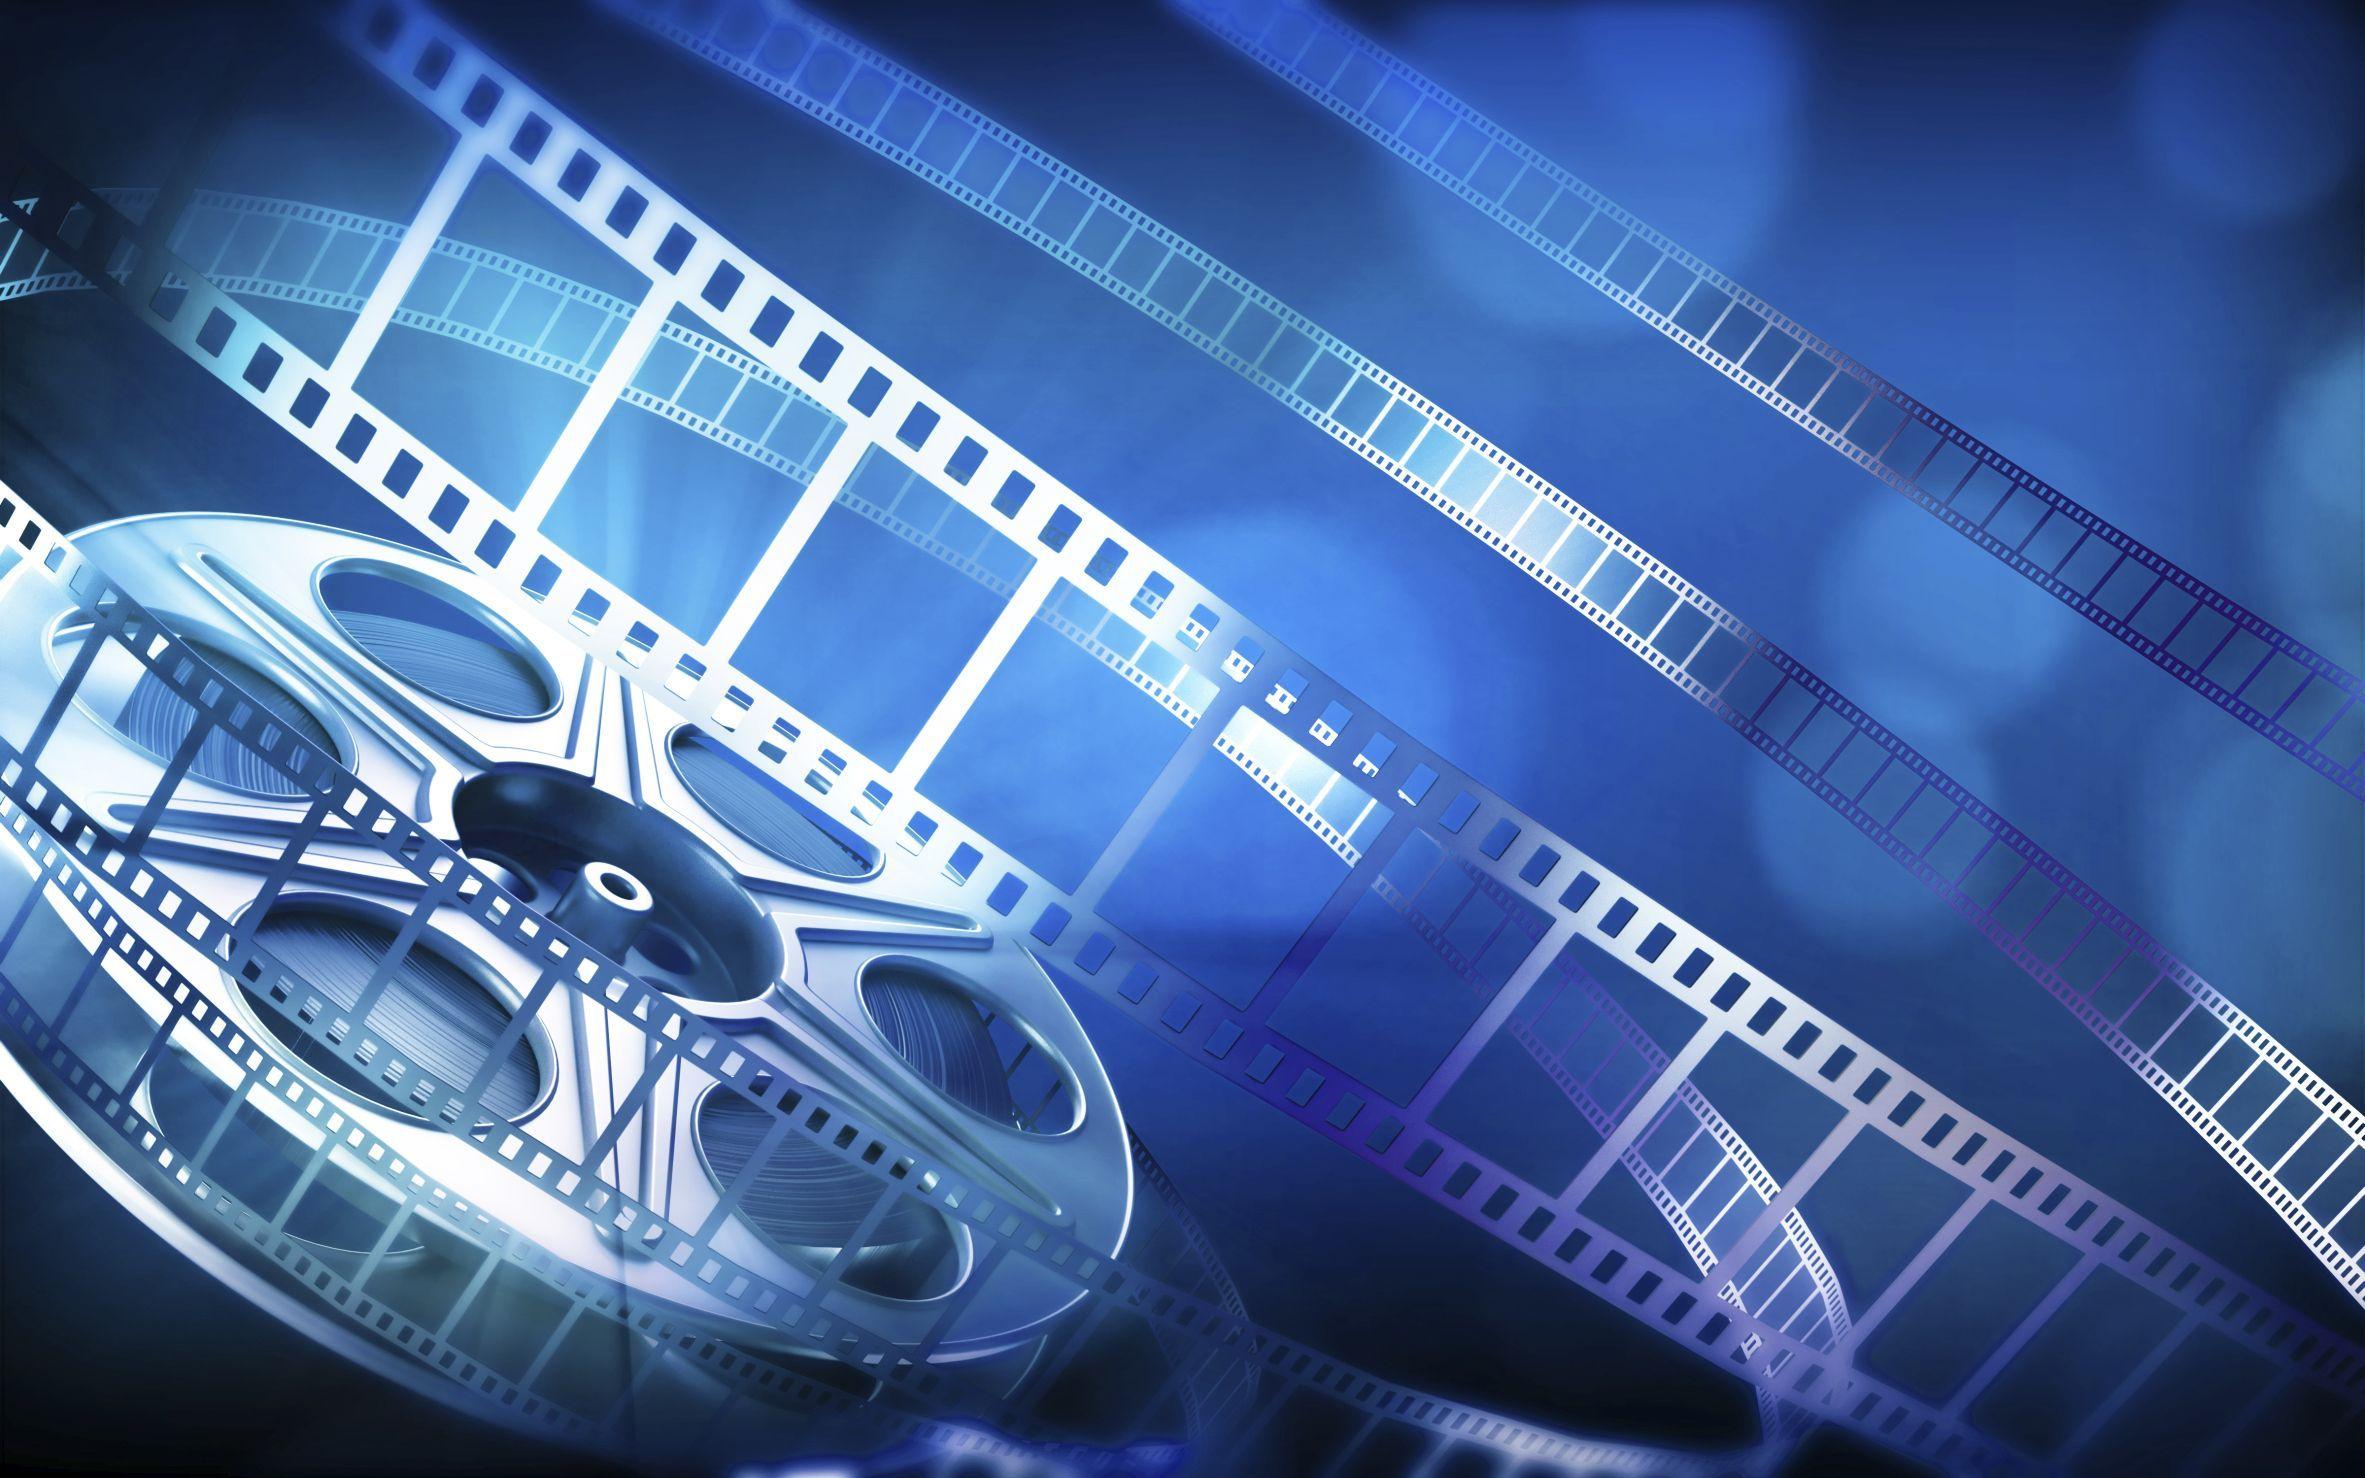 Movie Reel Projector Desktop Wallpaper. Film, Video online, Movie reels